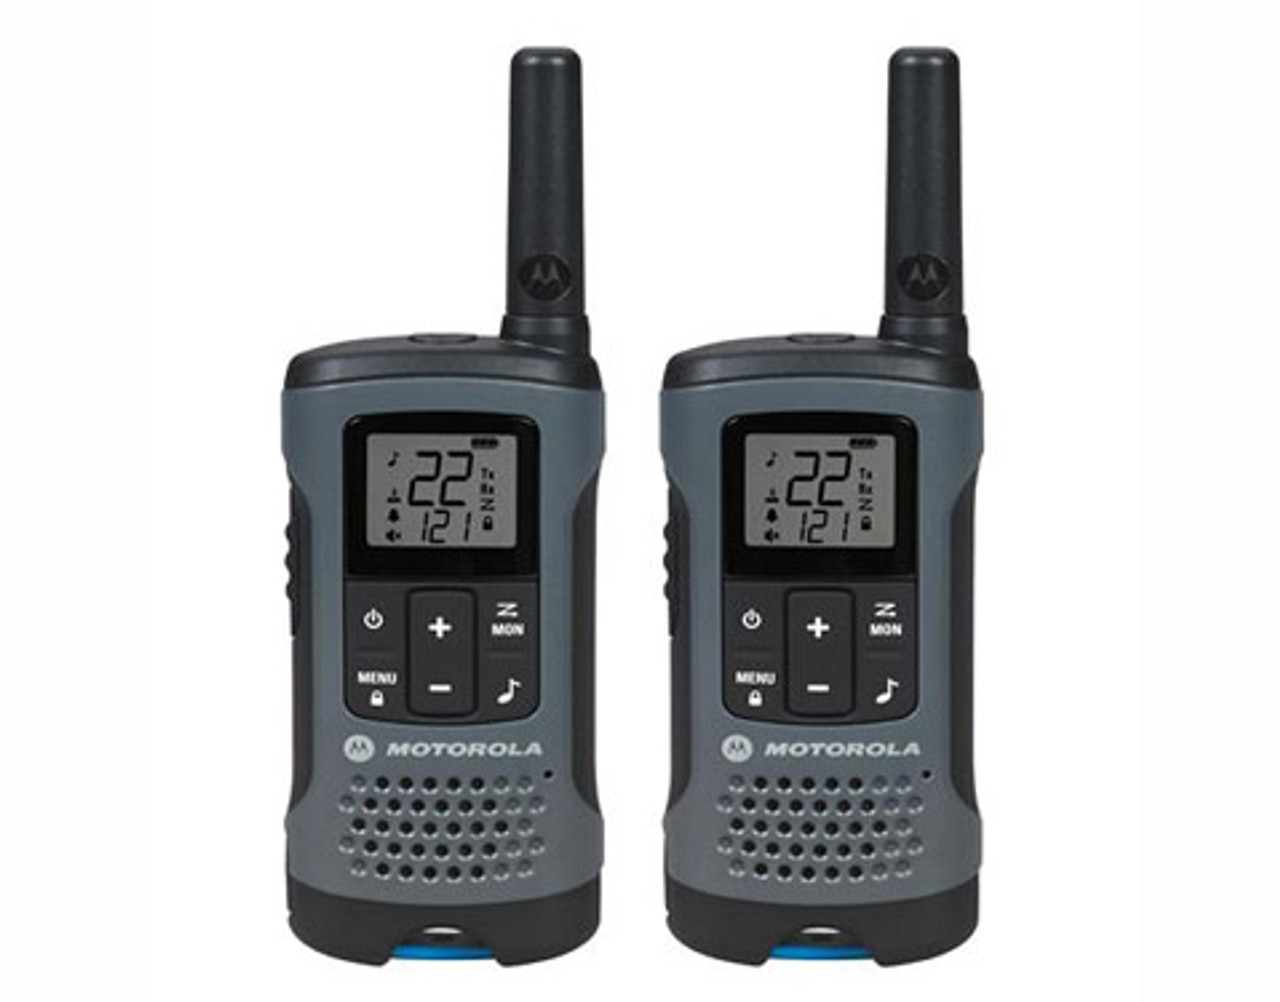 Pack of Motorola CLS1410 Two Way Radio Walkie Talkies (UHF) - 3